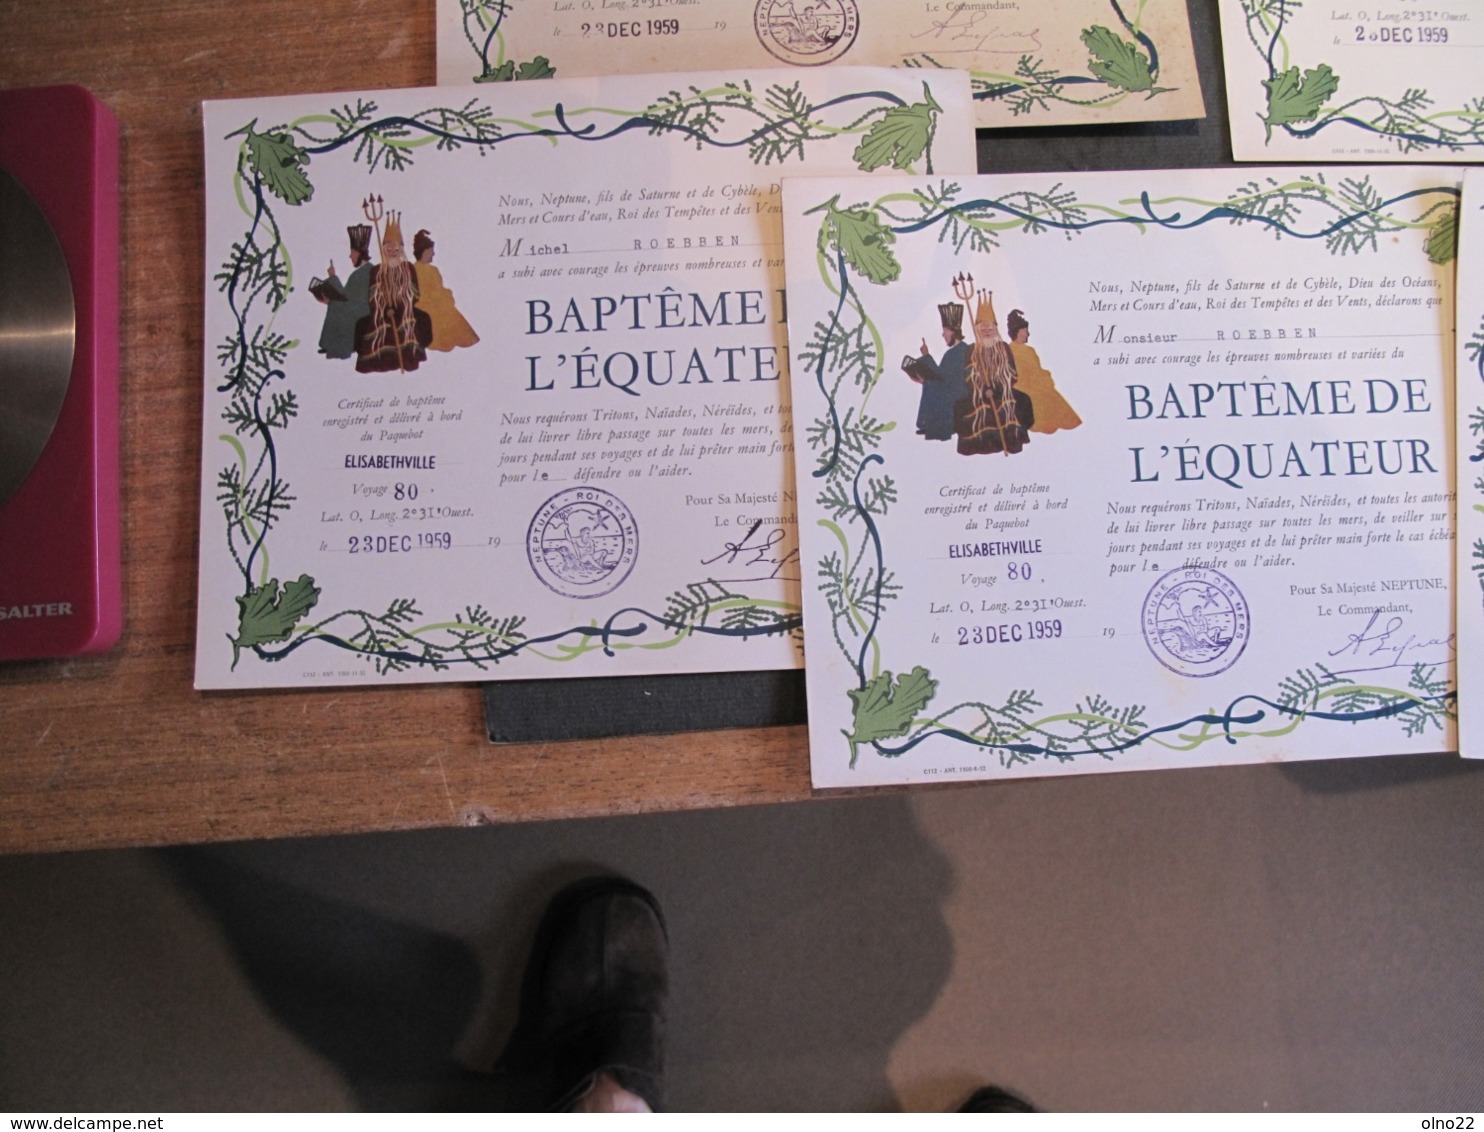 PAQUEBOT ELISABETHVILLE - 5 DIPLOMES/BAPTEMES DE L'EQUATEUR - 23/12/59 - Commandant LEPAL - FAMILLE ROEBBEN - Diplômes & Bulletins Scolaires